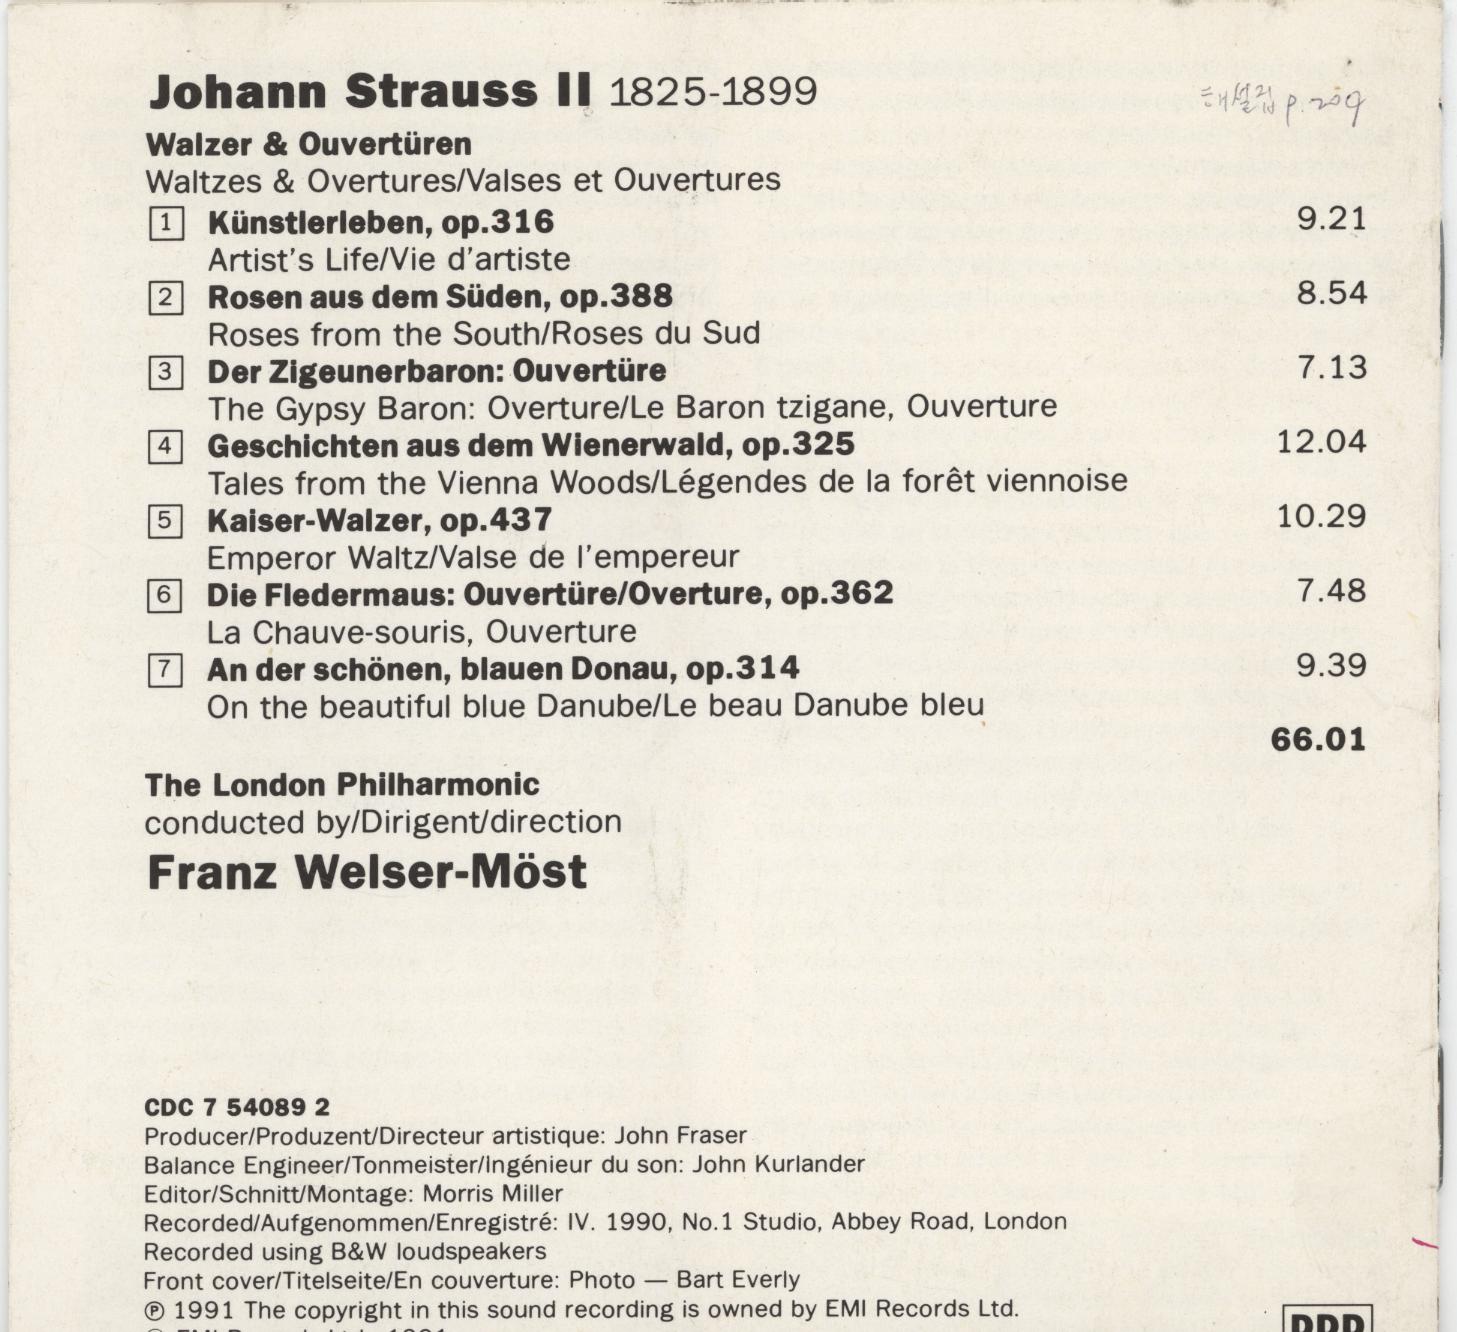 프란츠 벨저 뫼스트 (Franz Welser-most) -  슈트라우스 서곡 &amp 왈츠 (STRAUSS WALZER &amp OVERTUREN)